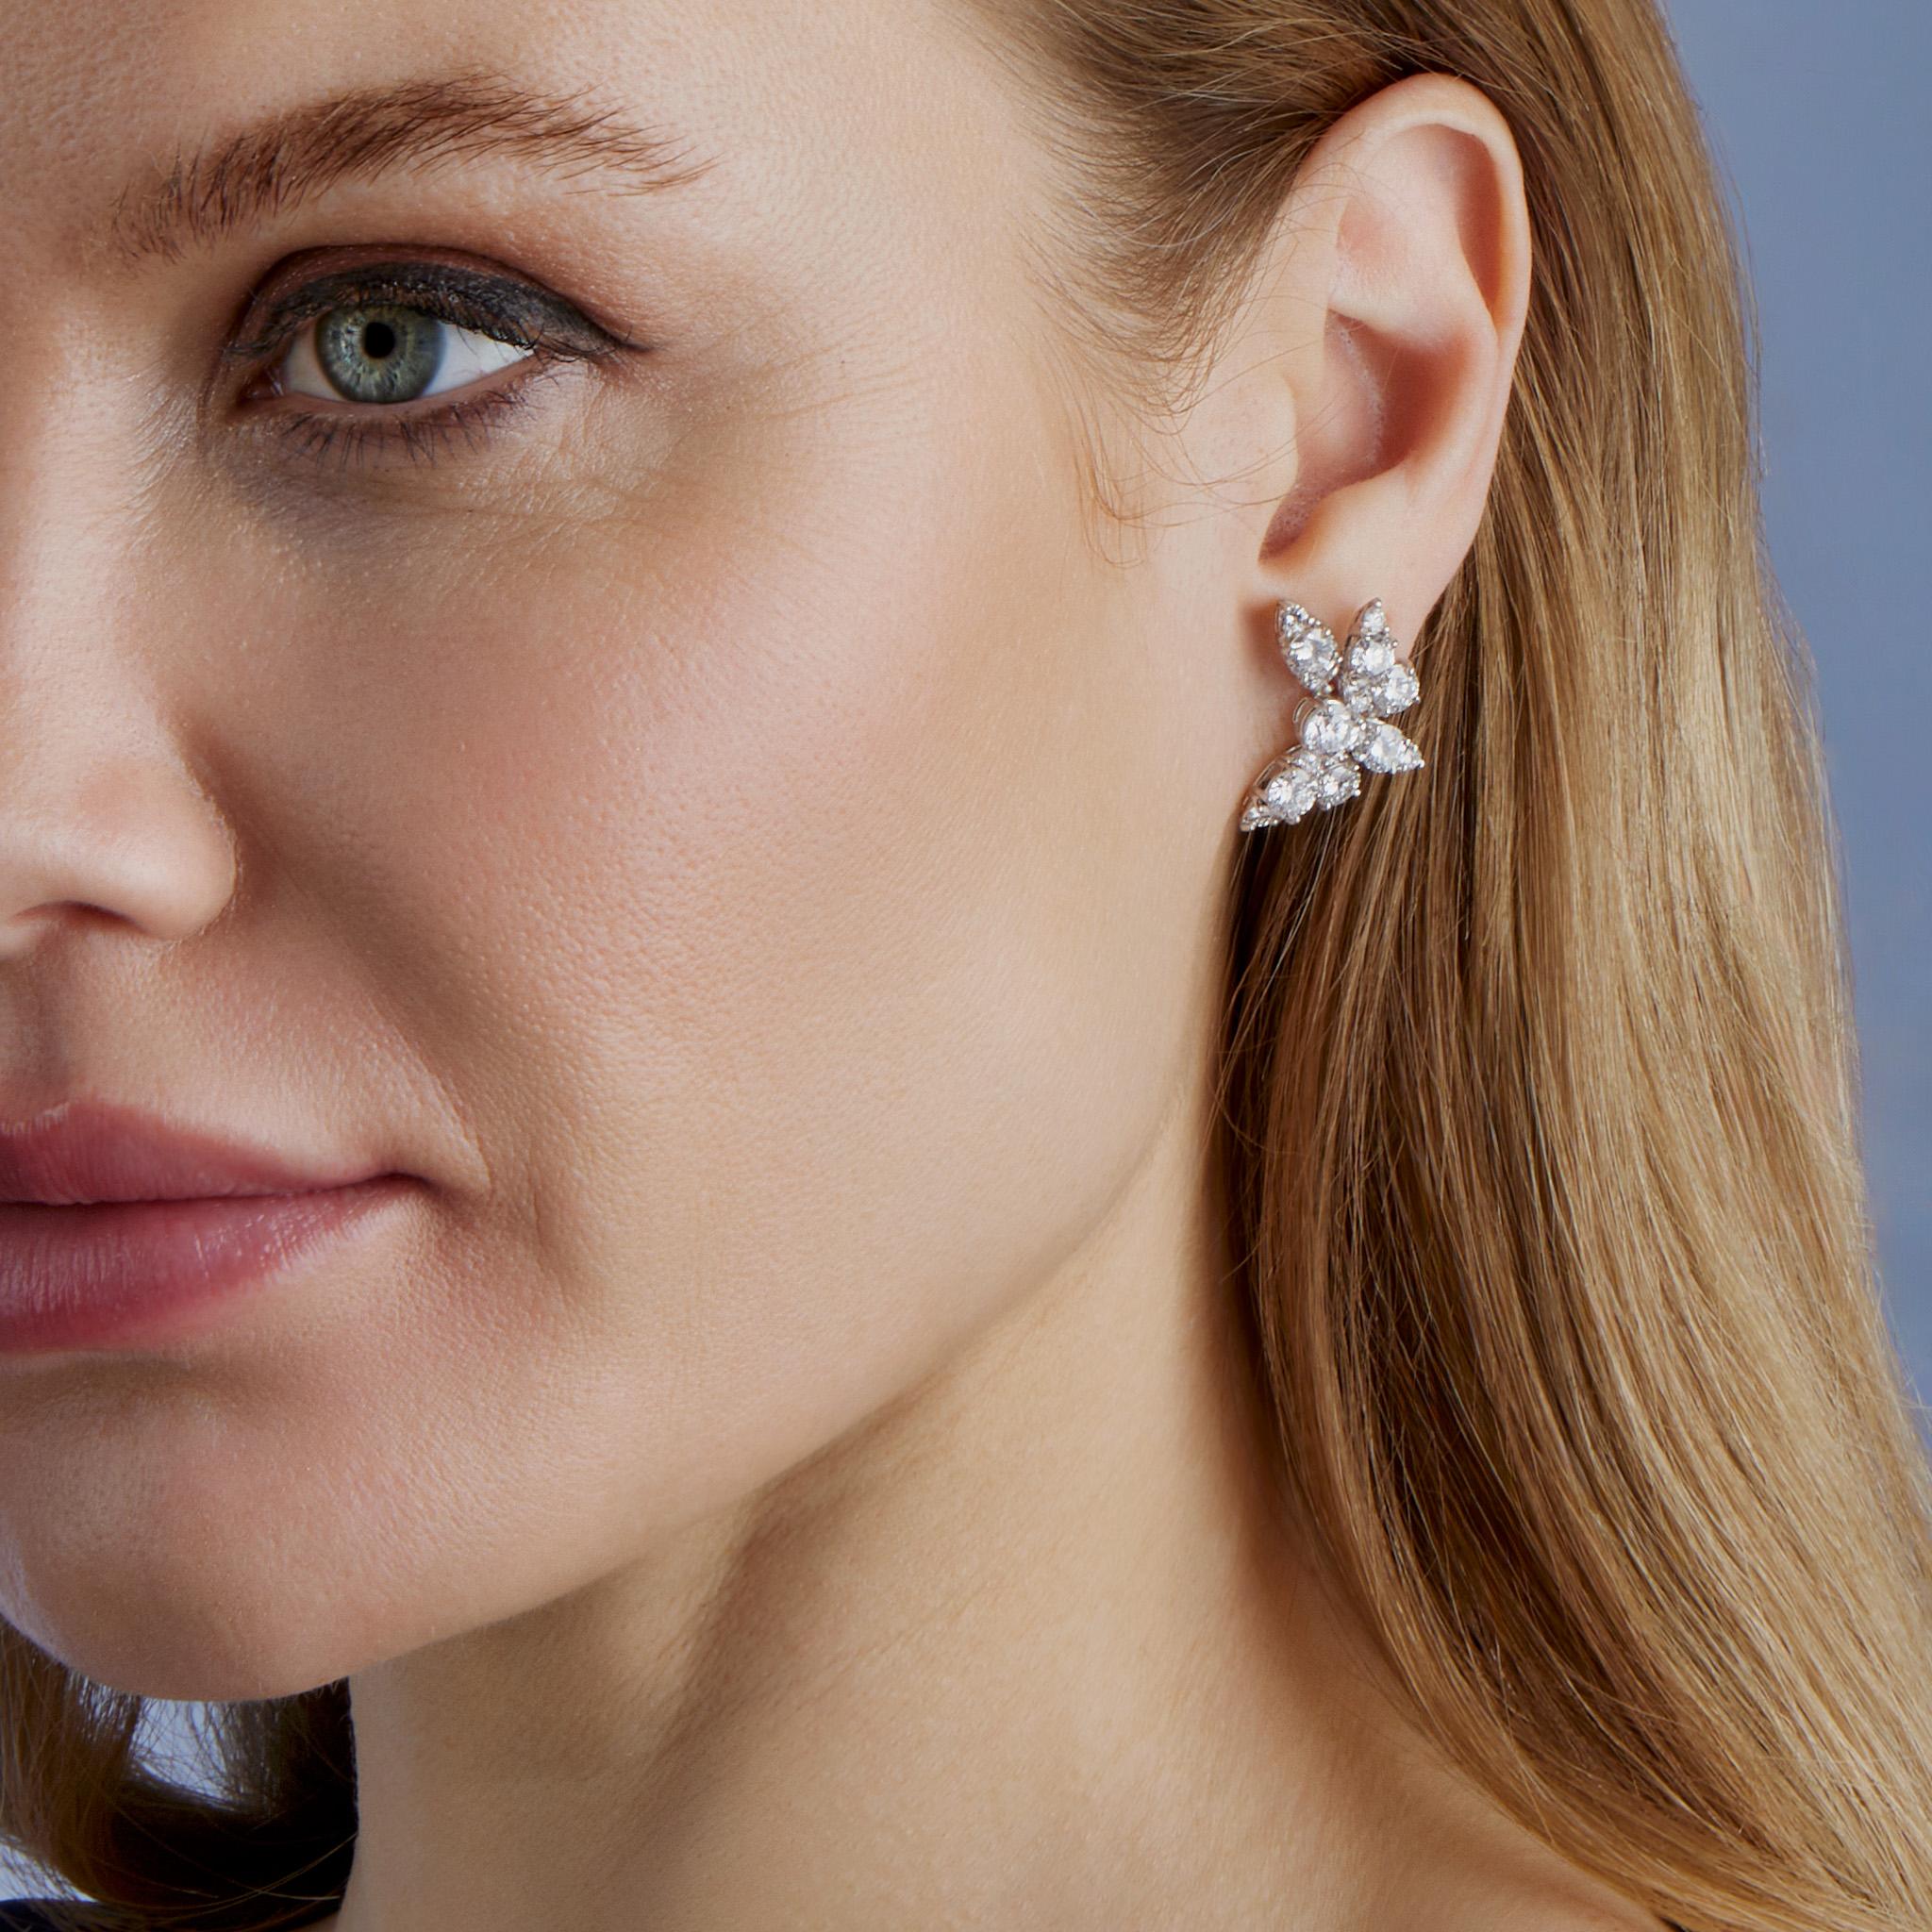 Diese in den 1960er Jahren kreierten Ohrringe von Van Cleef & Arpels bestehen aus Platin und ca. 7,00 Karat Diamanten. Jeder Ohrring mit Omega-Clipverschluss ist als Blüte gestaltet. Diese zierlichen, glänzenden Ohrringe wurden von den Juwelieren